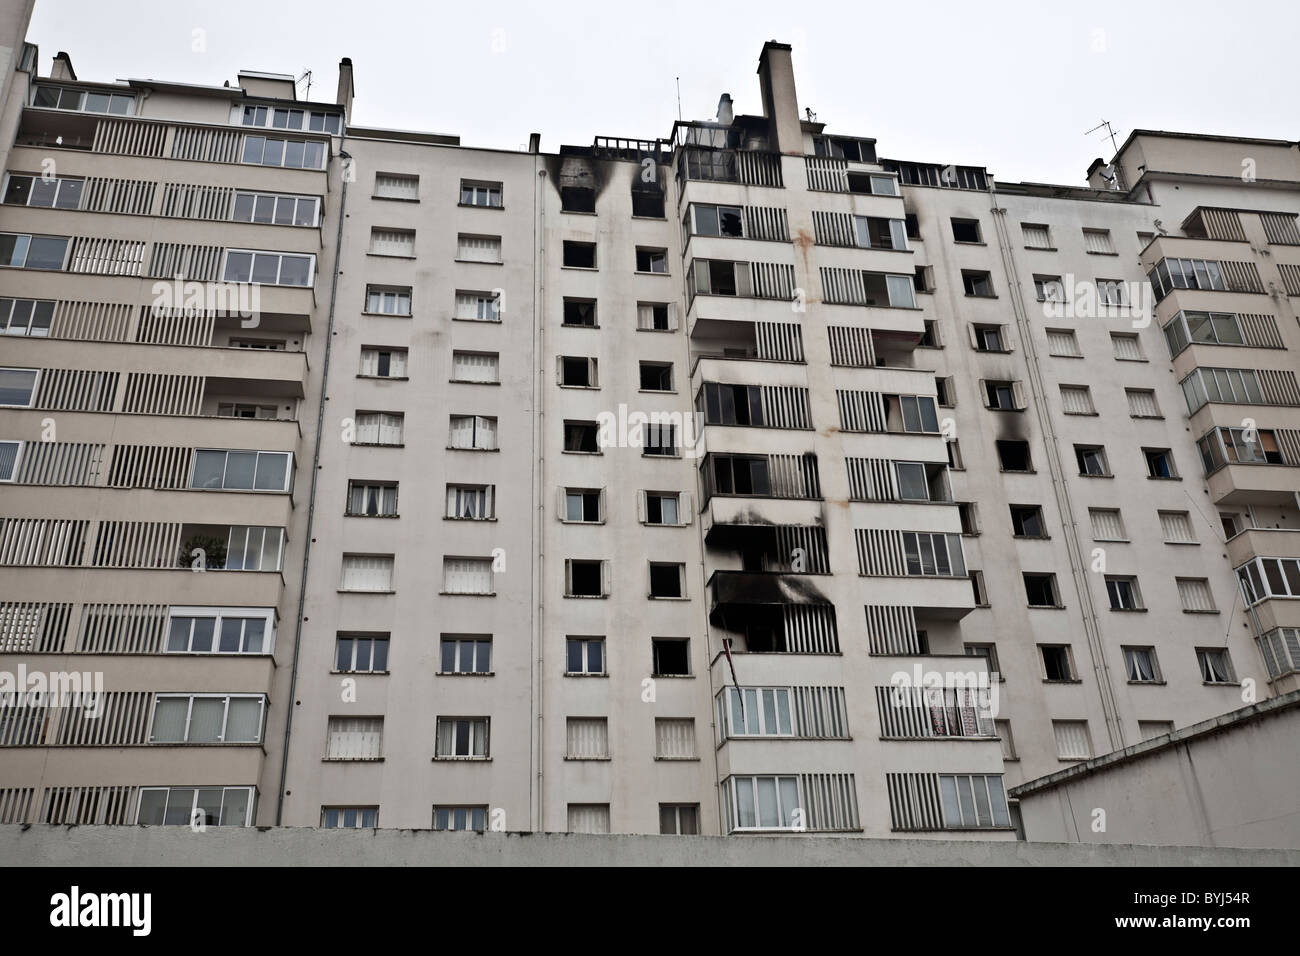 Un incendie dans un bloc résidentiel des années 60 situé à Vichy (France). Incendie dans un immeuble des années 60, à Vichy (France). Banque D'Images